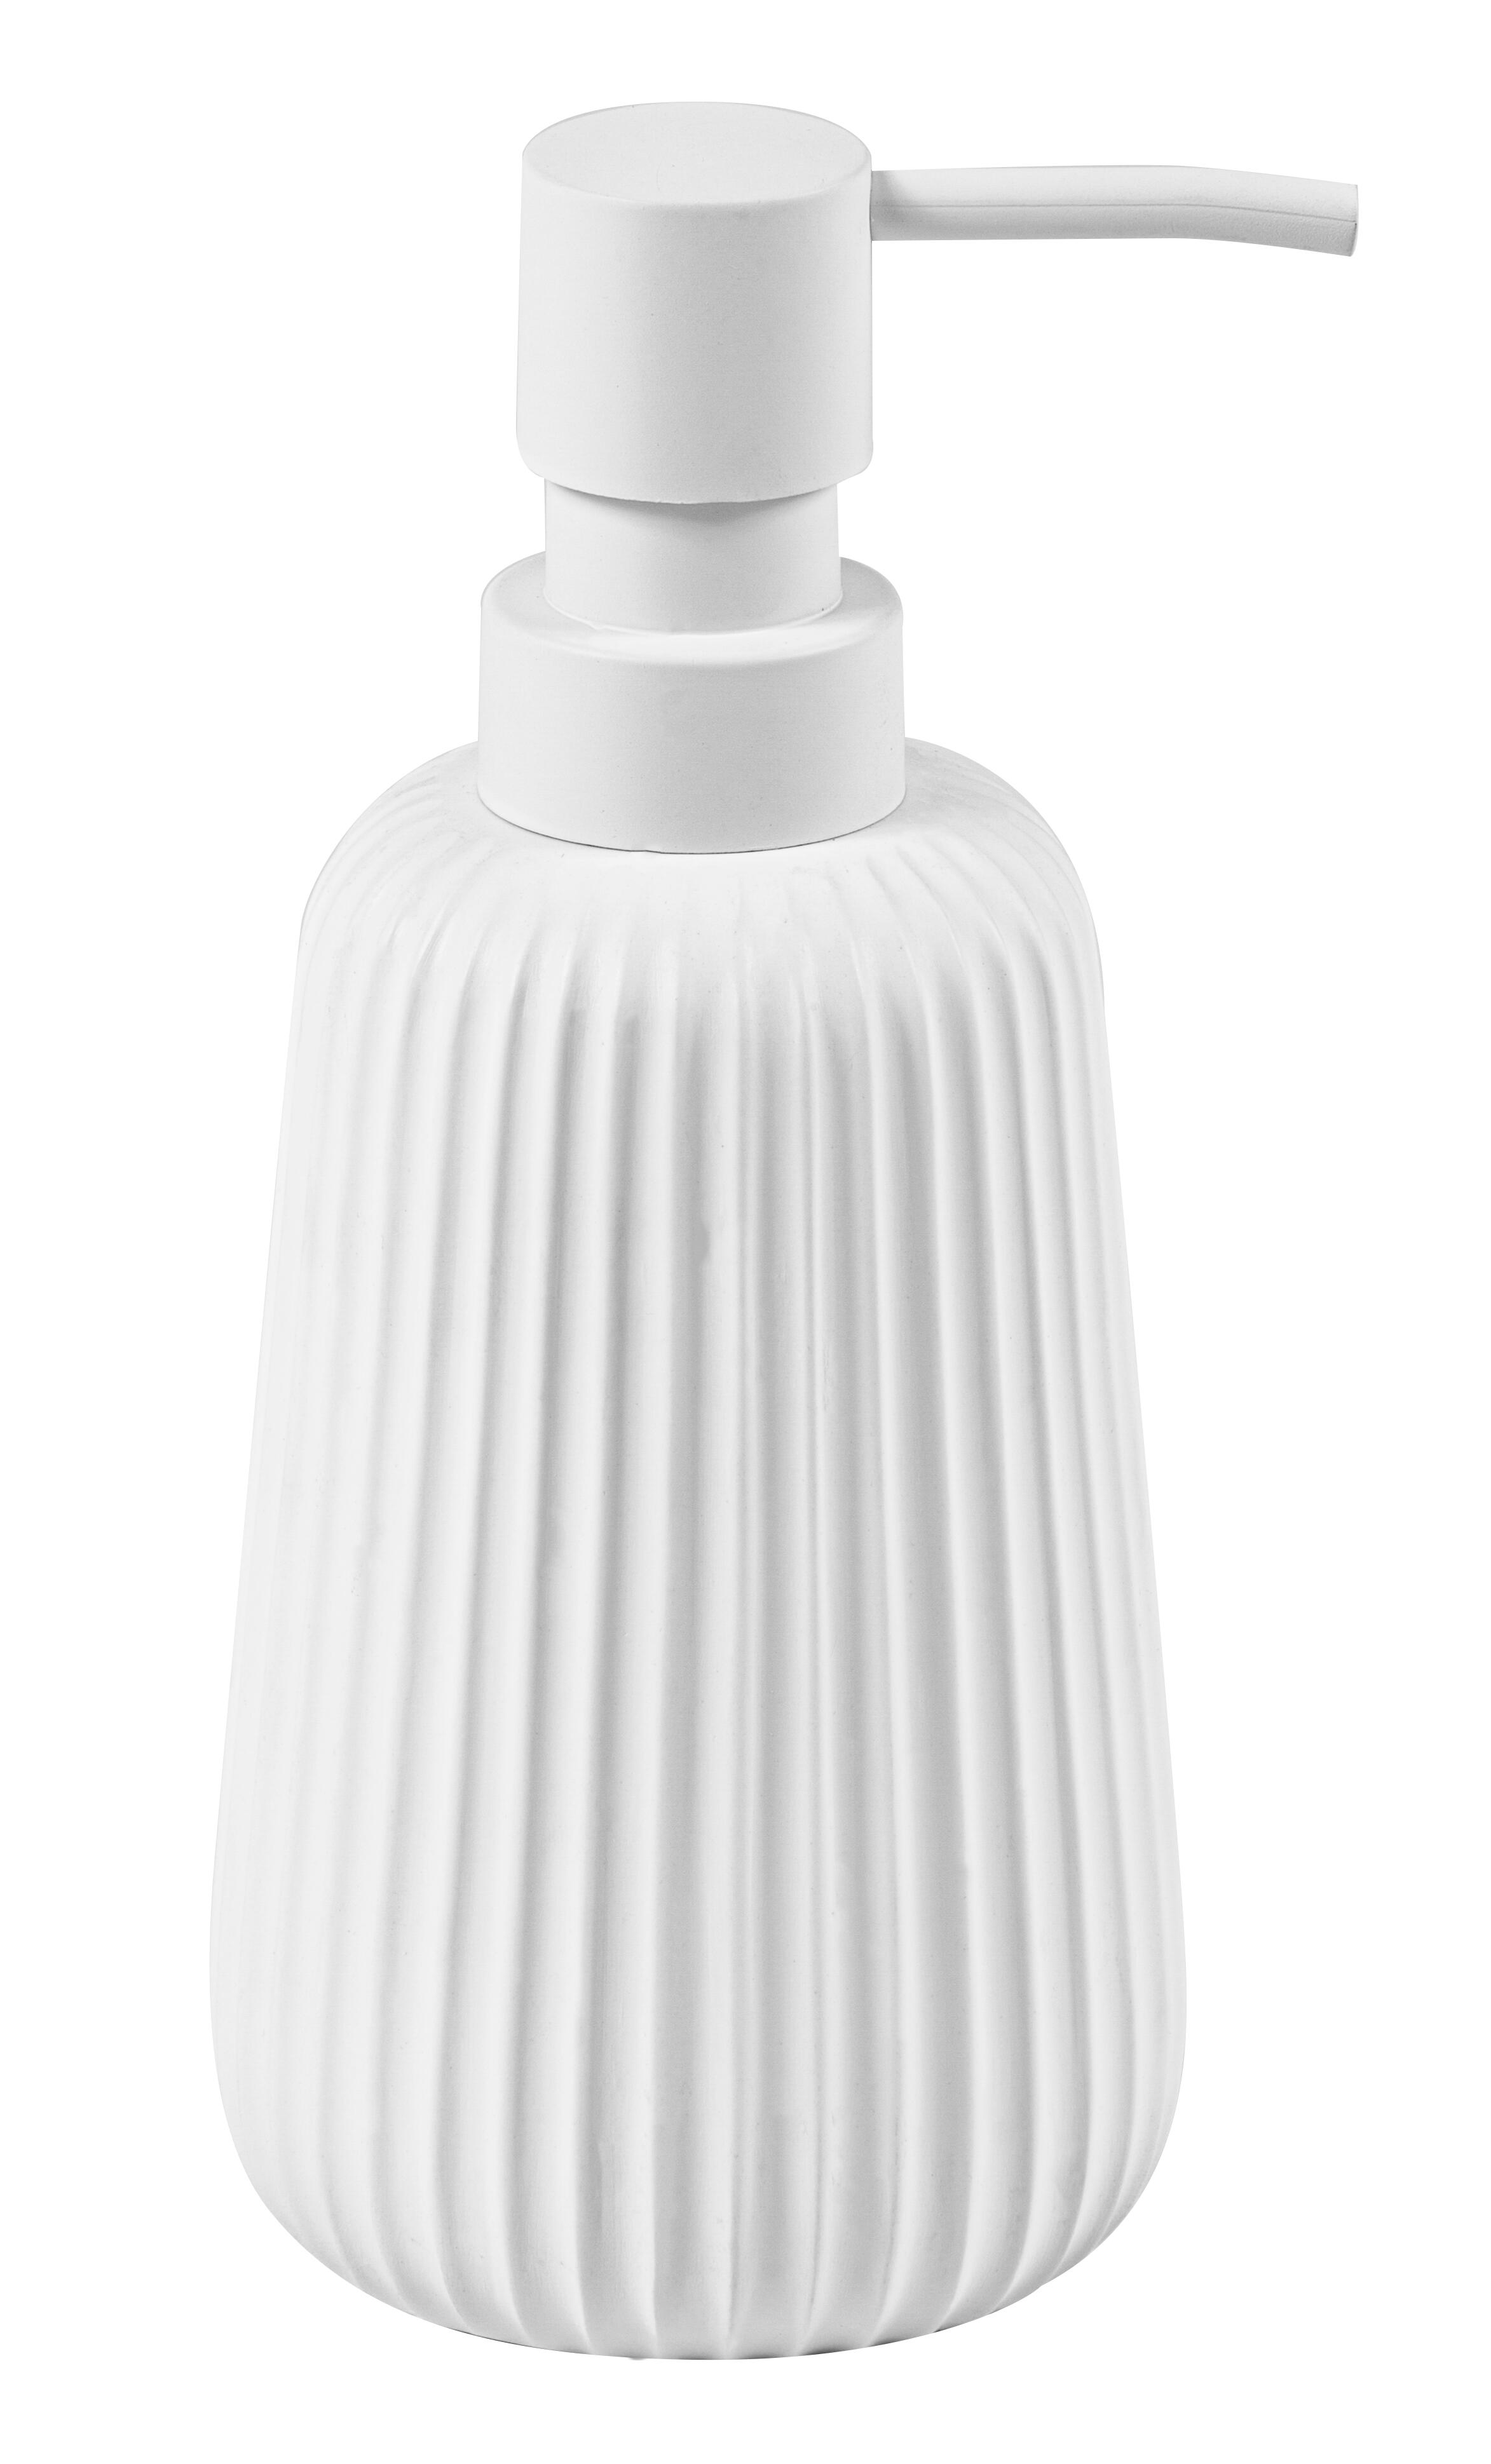 Dispensador de jabón plisse blanco